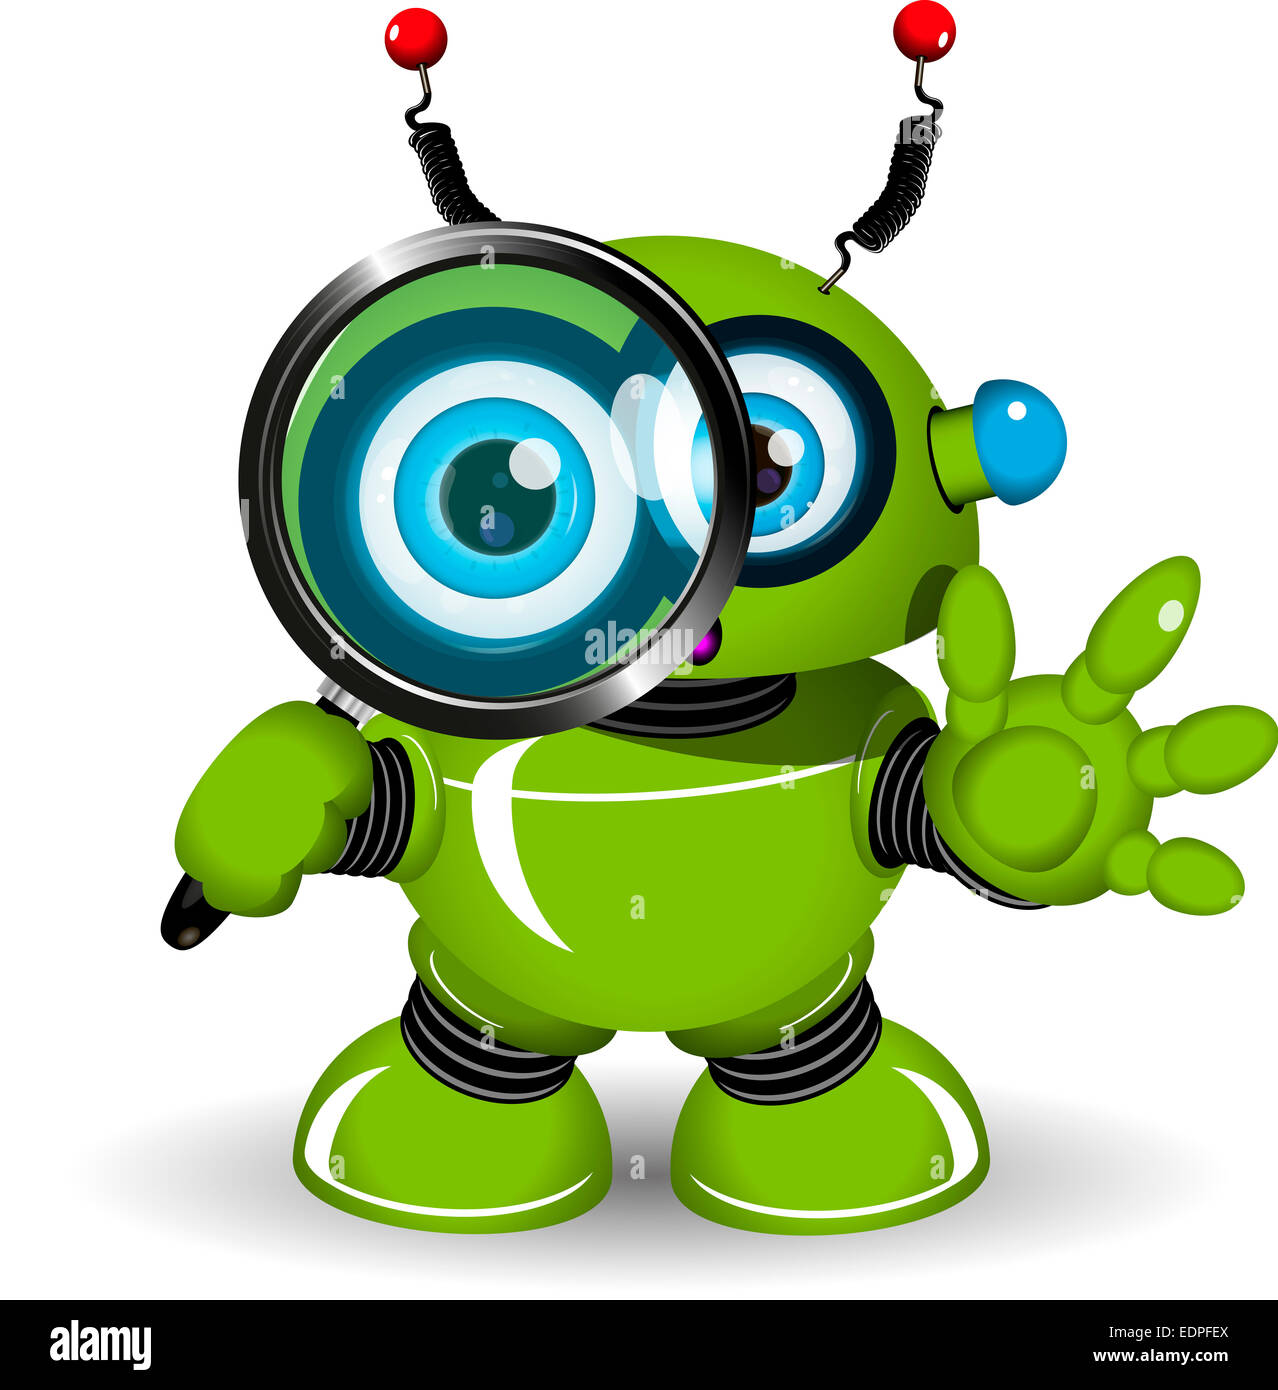 Abbildung eines grünen Roboters mit einer Lupe Stockfoto